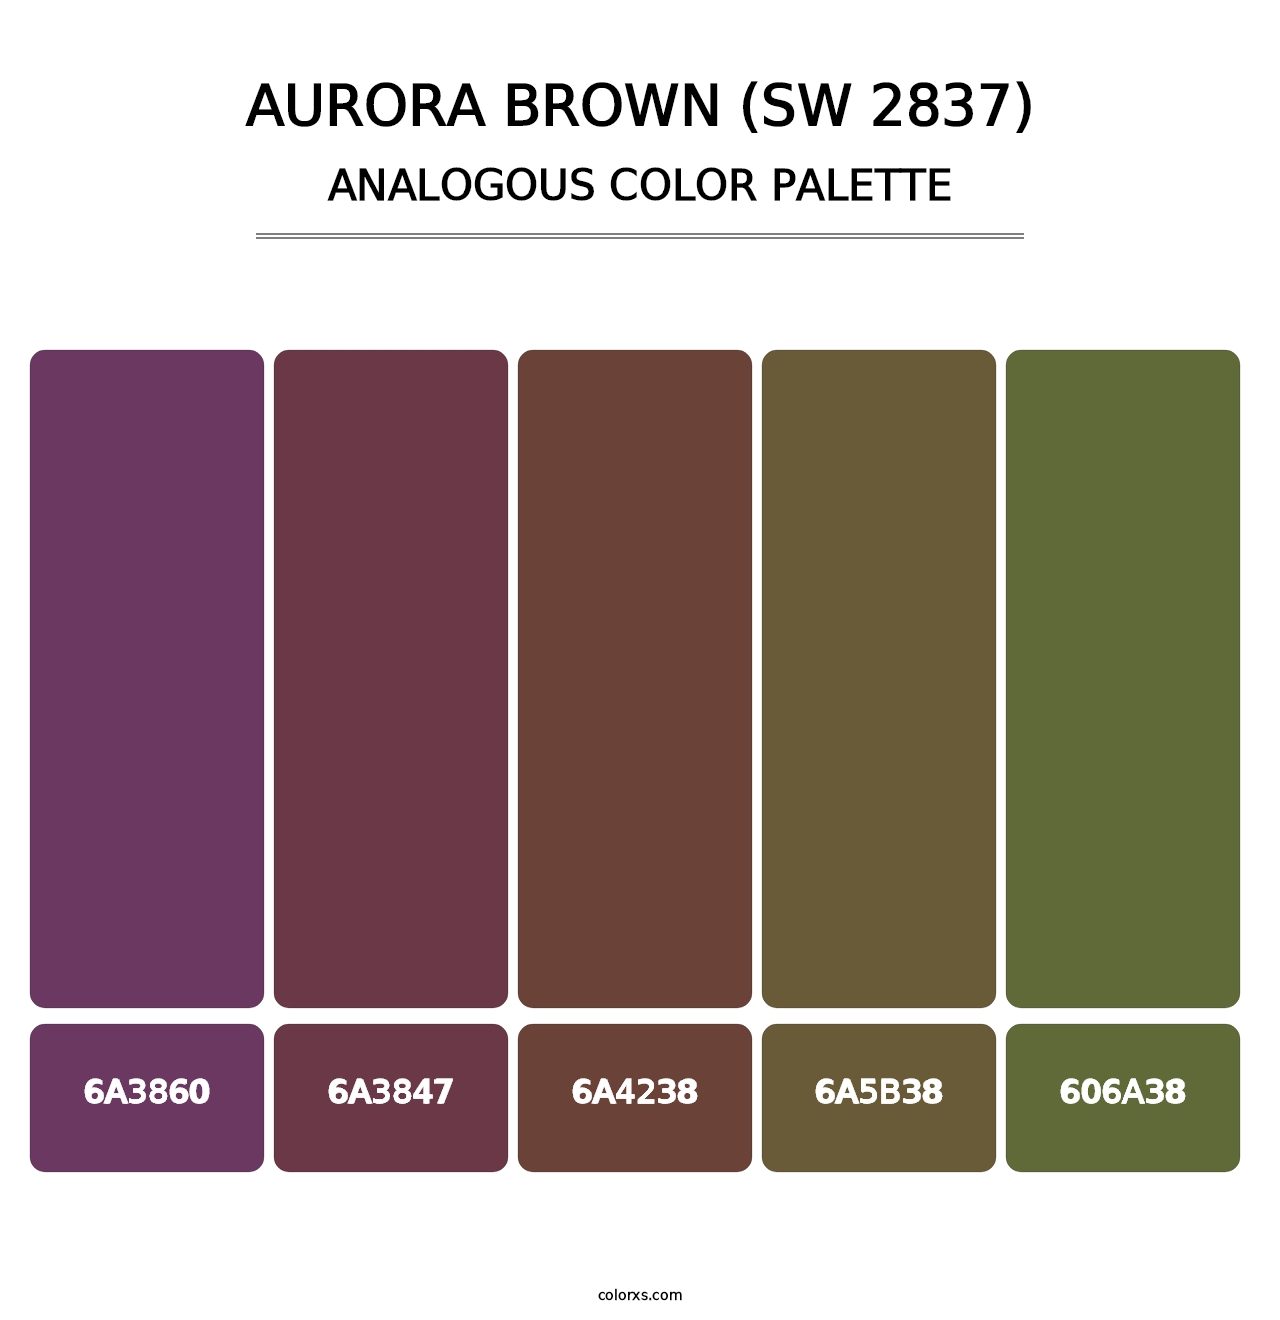 Aurora Brown (SW 2837) - Analogous Color Palette